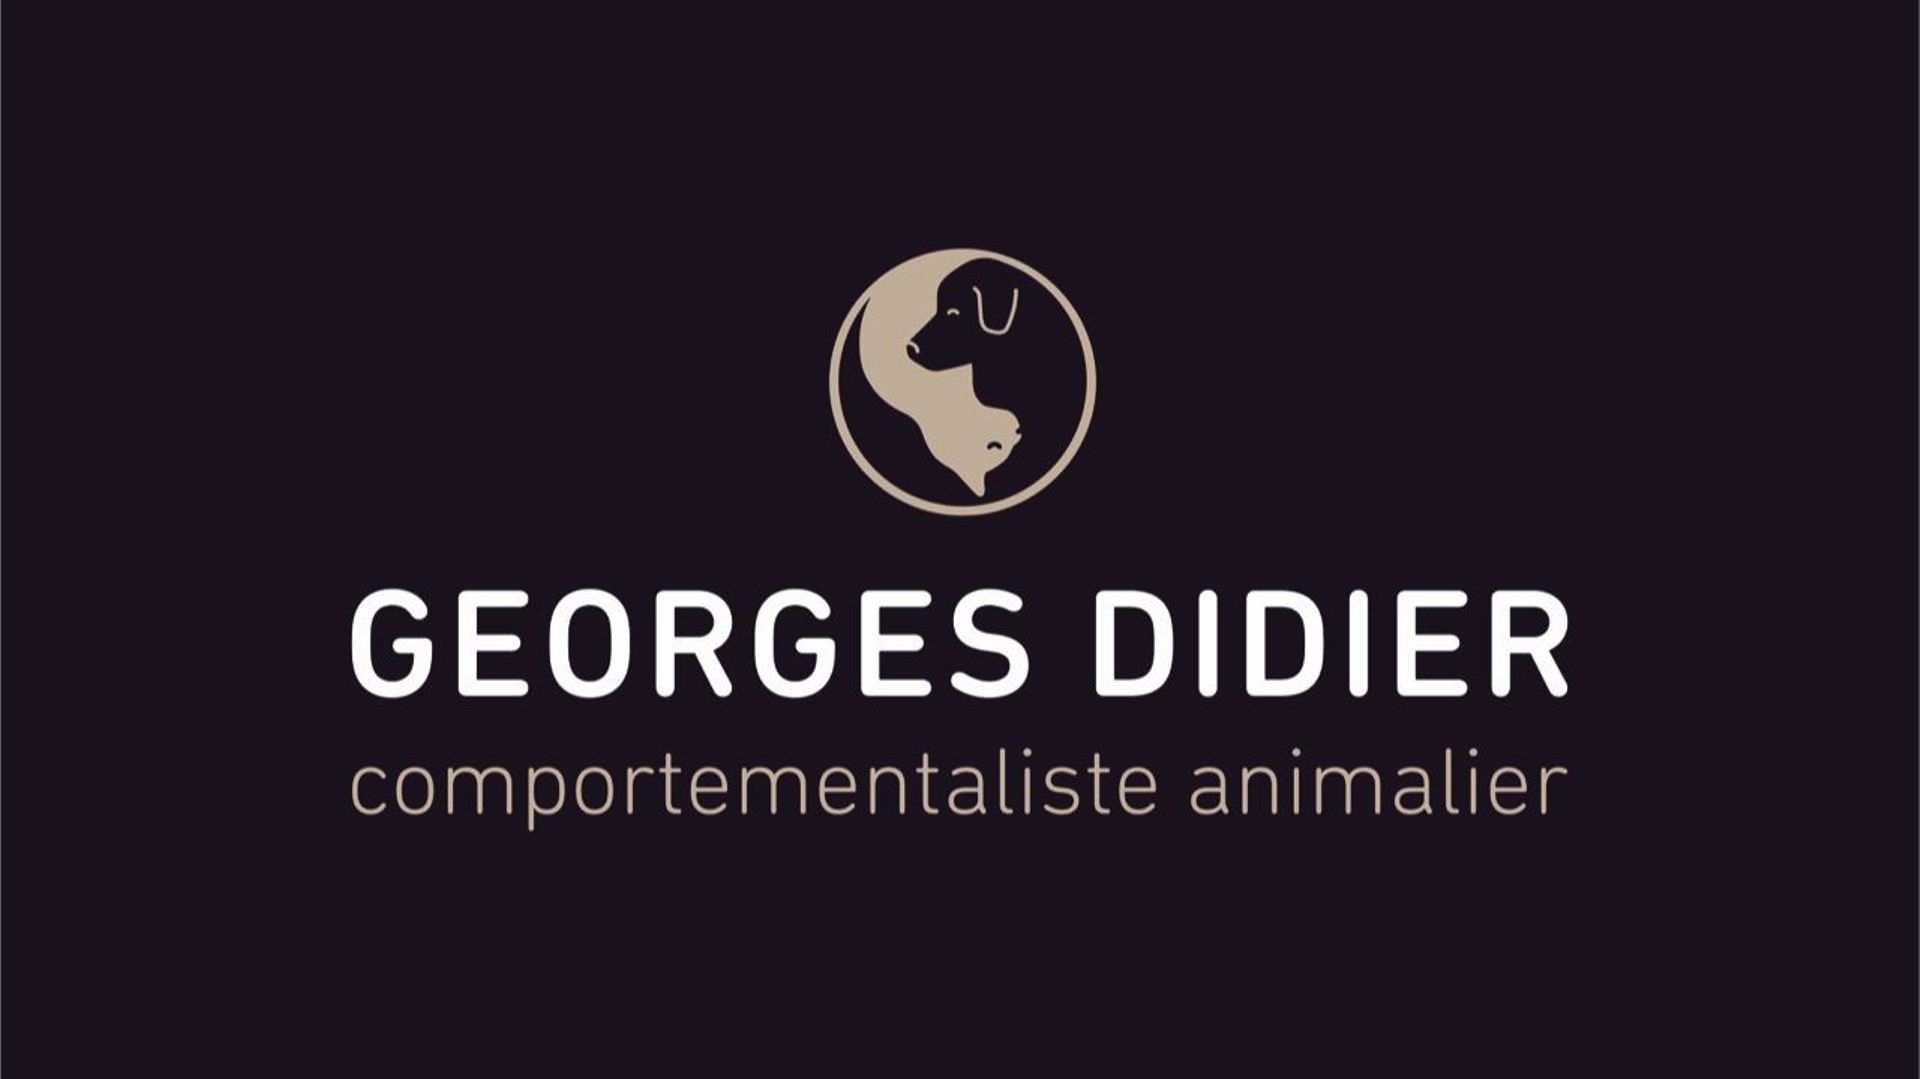 Georges Didier est comportementaliste pour les félins et les chiens